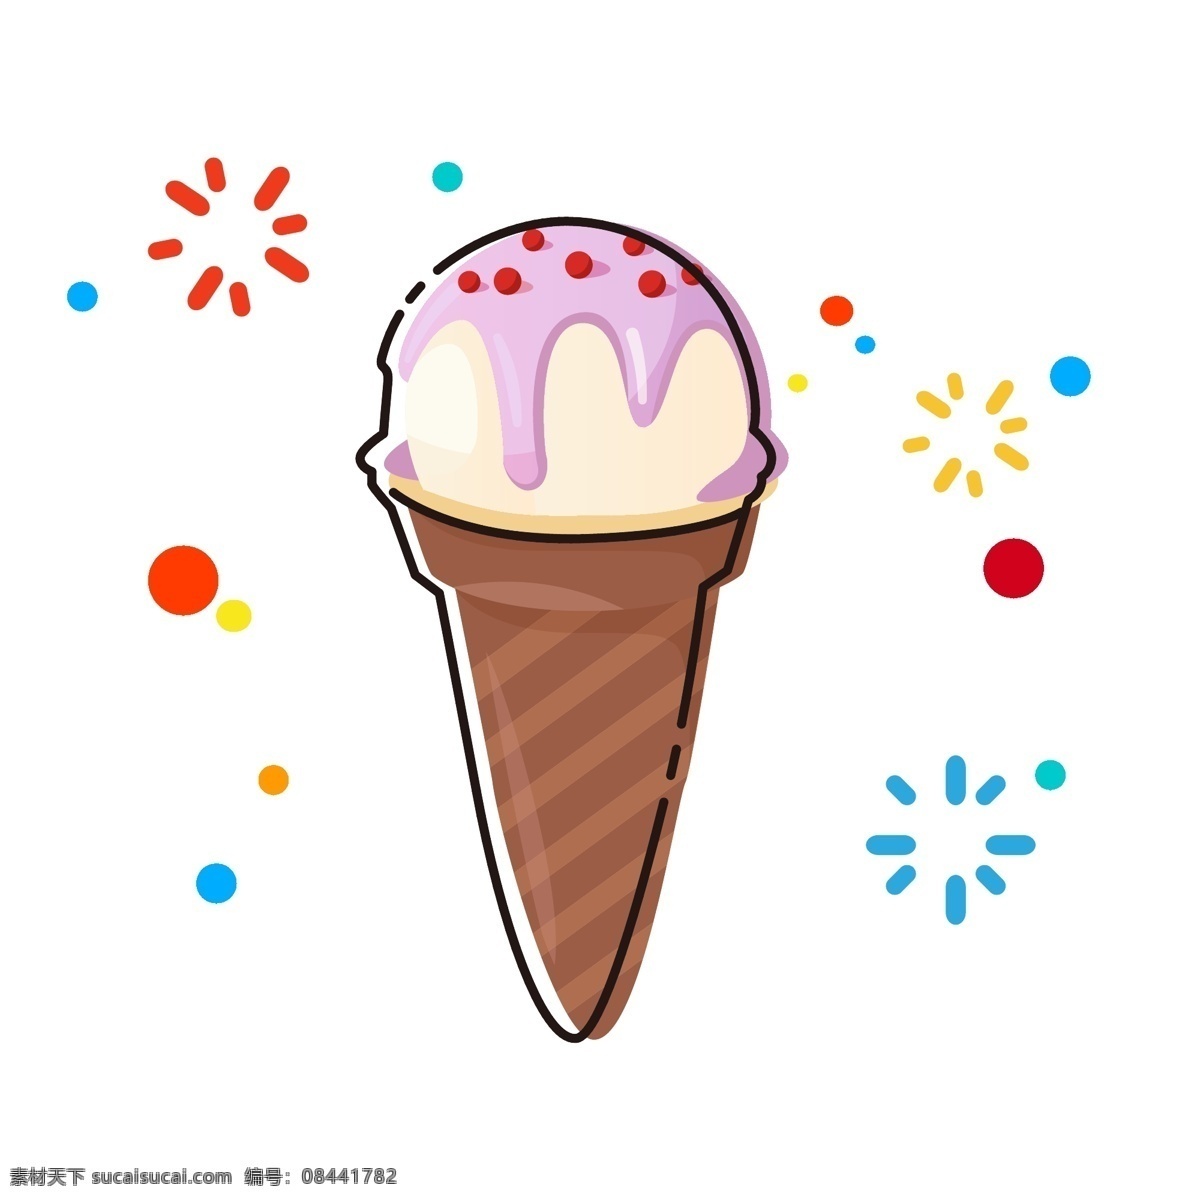 mbe 卡通 手绘 冰淇淋 甜筒 食物 美食 可爱